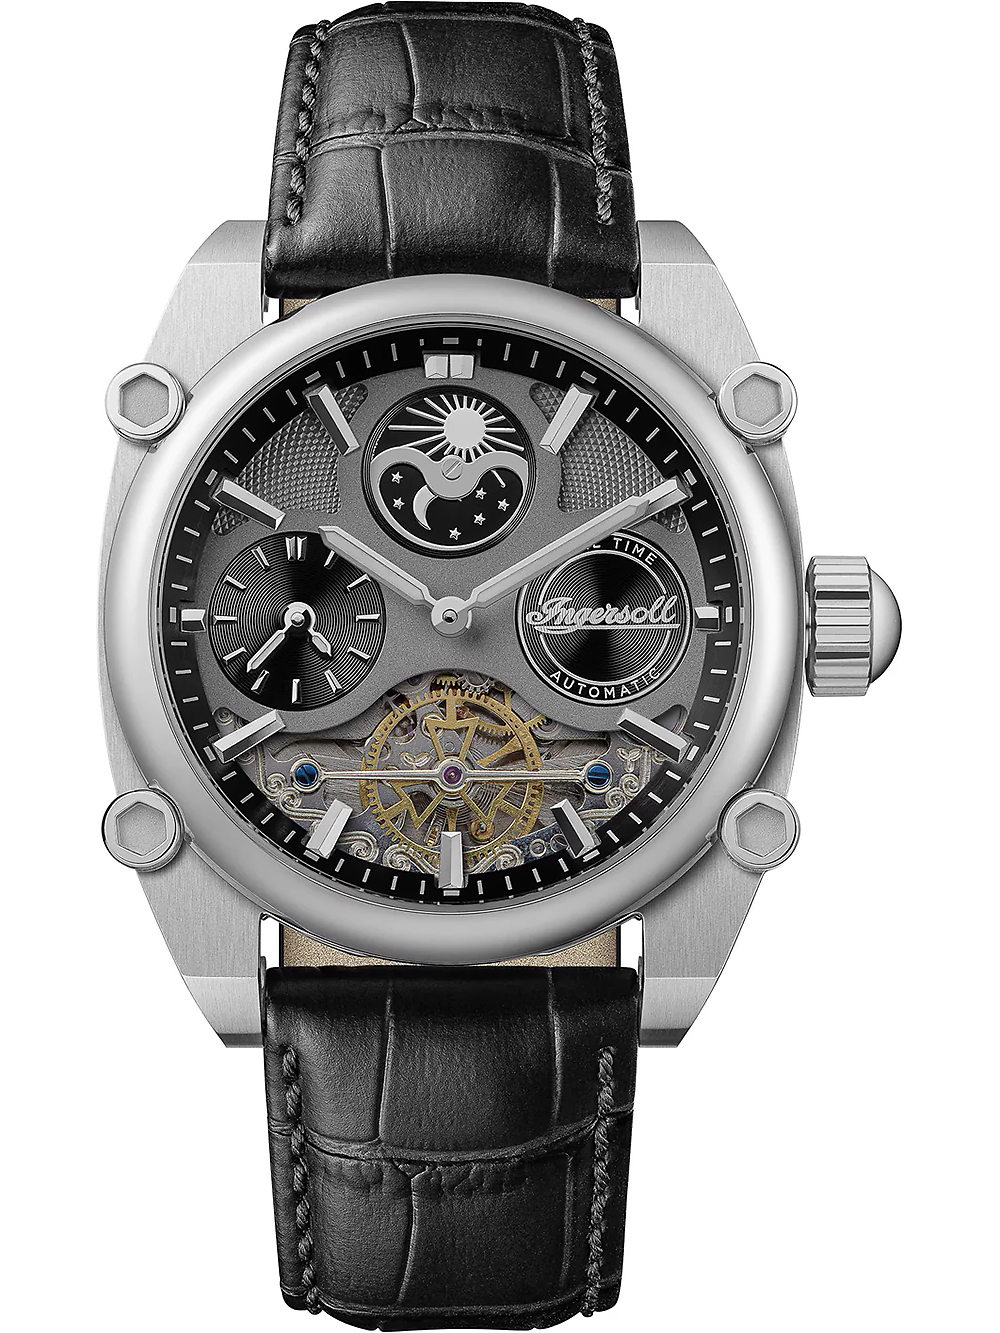 Pánské hodinky Ingersoll I15402 Mens Watch Varsity Dual Time Automatic 45mm 5ATM